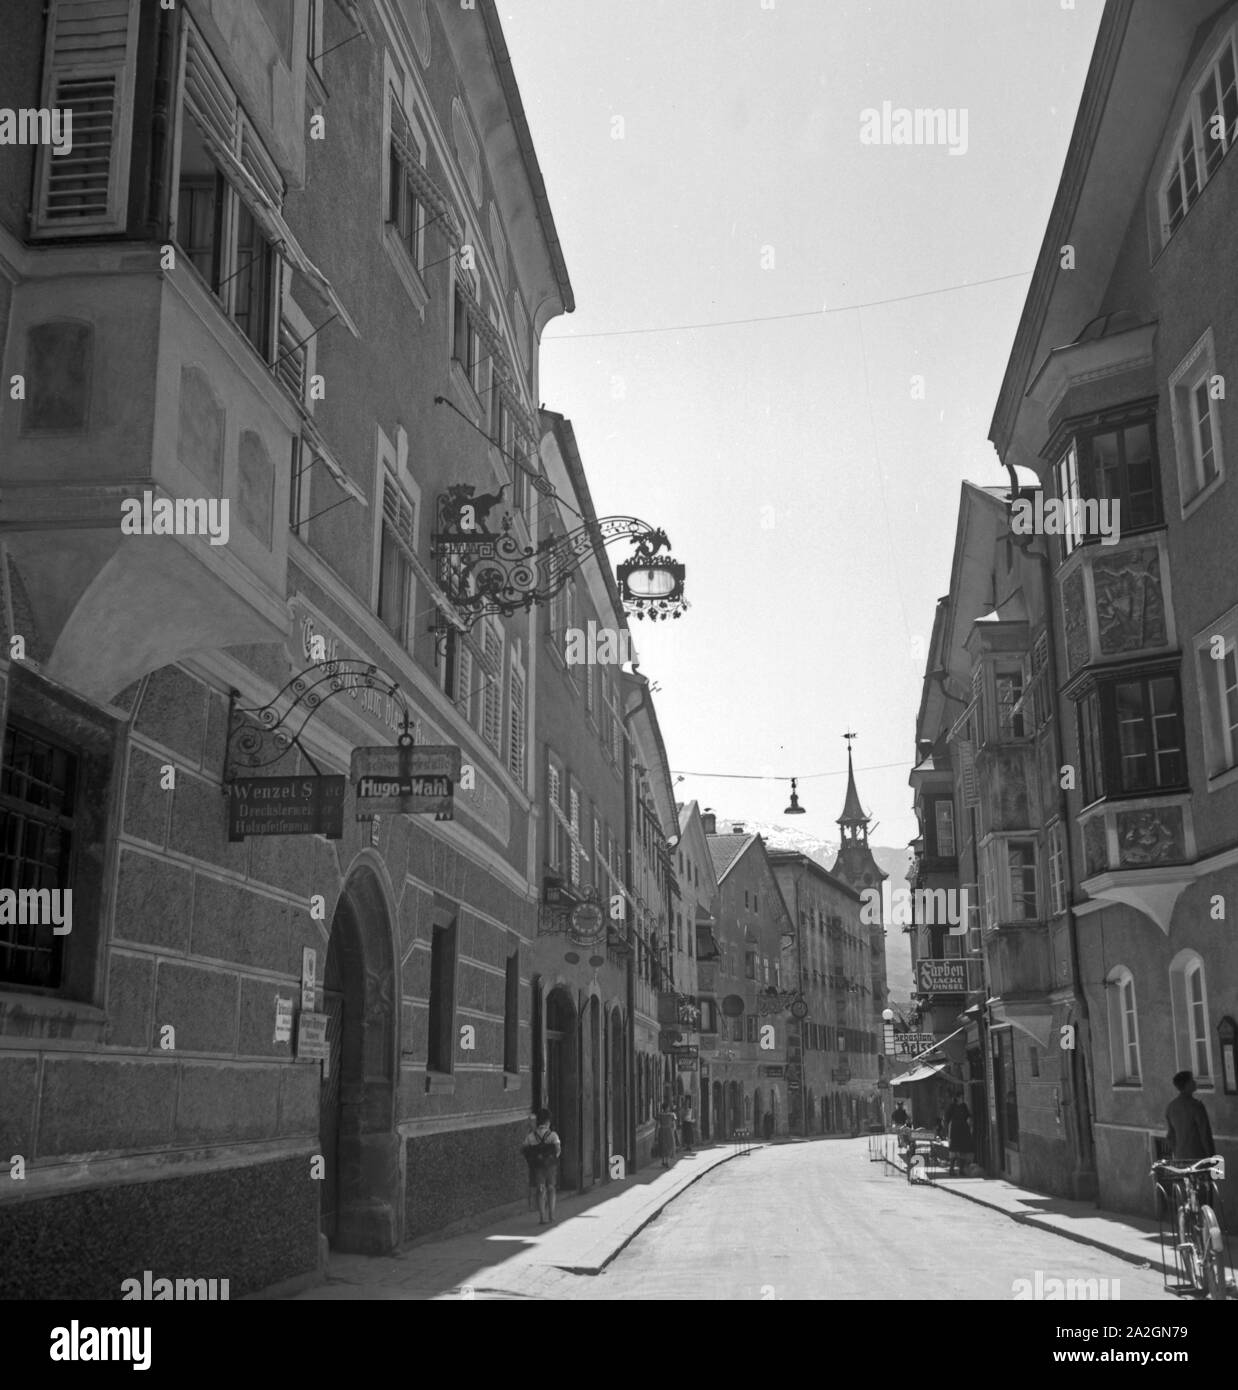 Typisches Straßenbild in einer österreichischen Kleinstadt, Deutschland 1930er Jahre. Typcial street scene of a small Austrian town, Germany 1930s. Stock Photo